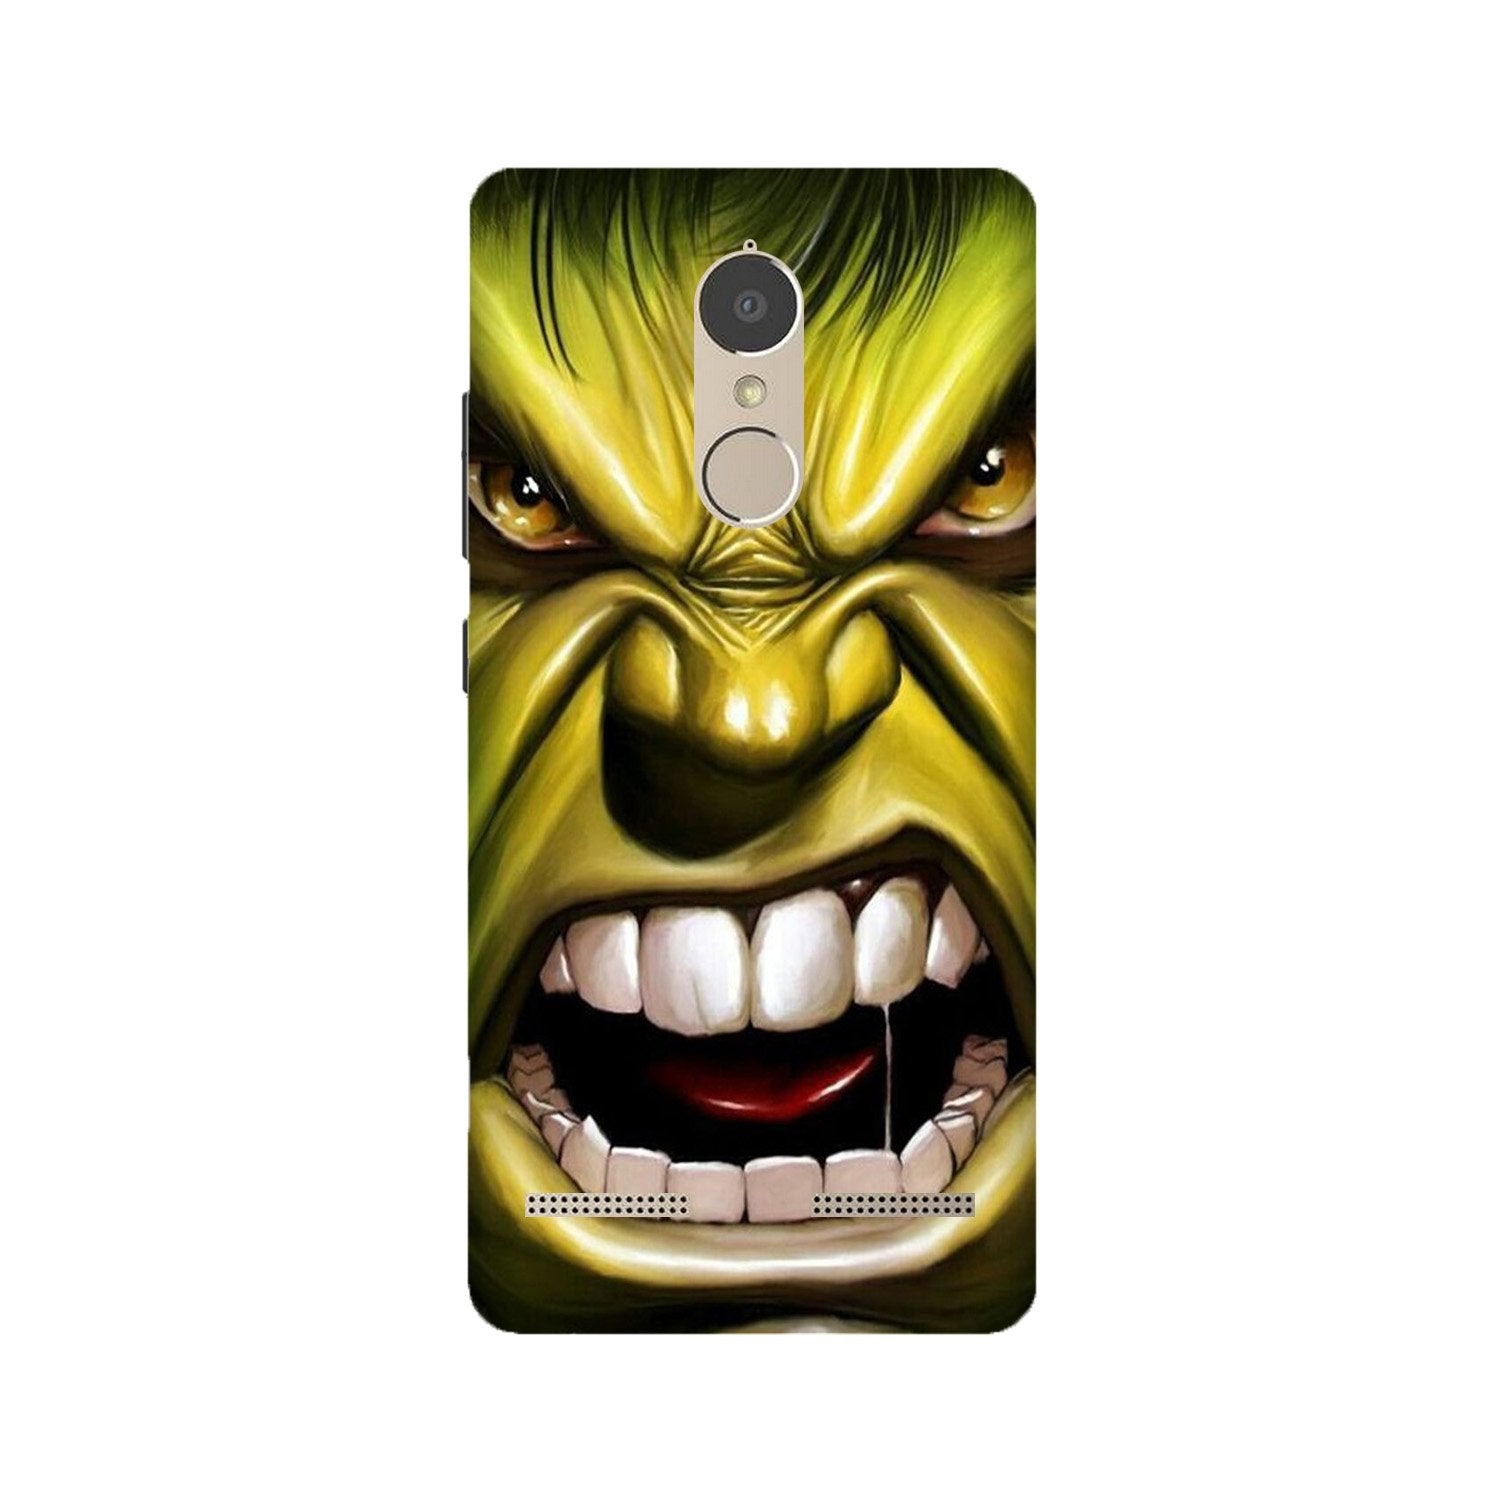 Hulk Superhero Case for Lenovo K6 / K6 Power(Design - 121)